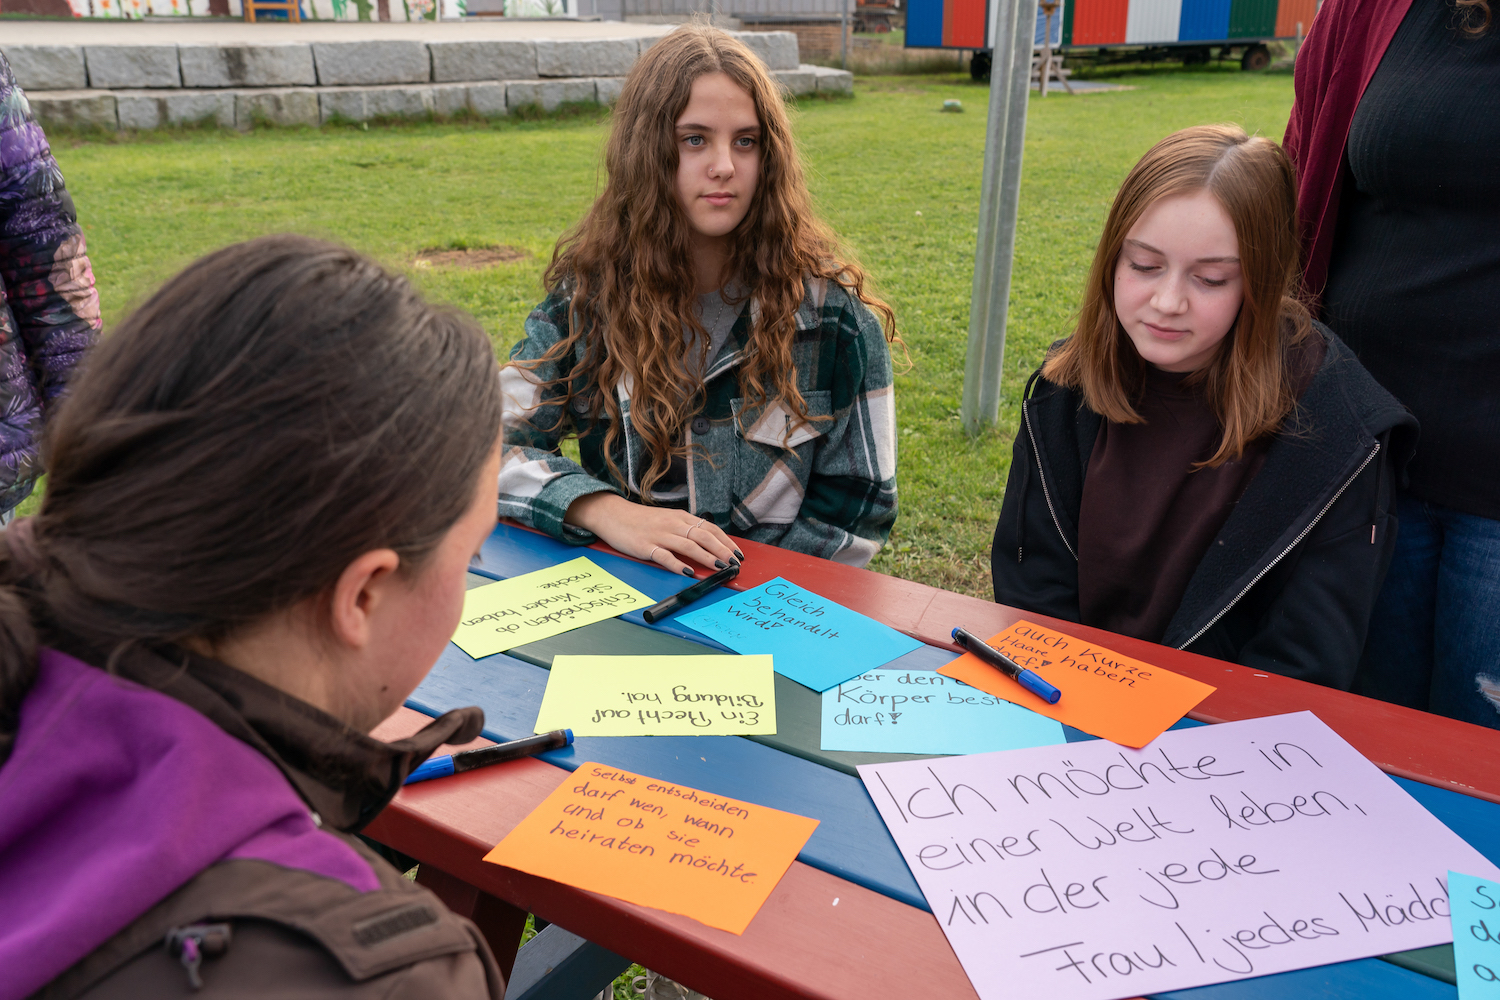 Drei Jugendliche sitzen an einem Tisch auf einer Wiese, auf dem Zettel mit verschiedenen Wünschen für Mädchen und Frauen auf der ganzen Welt